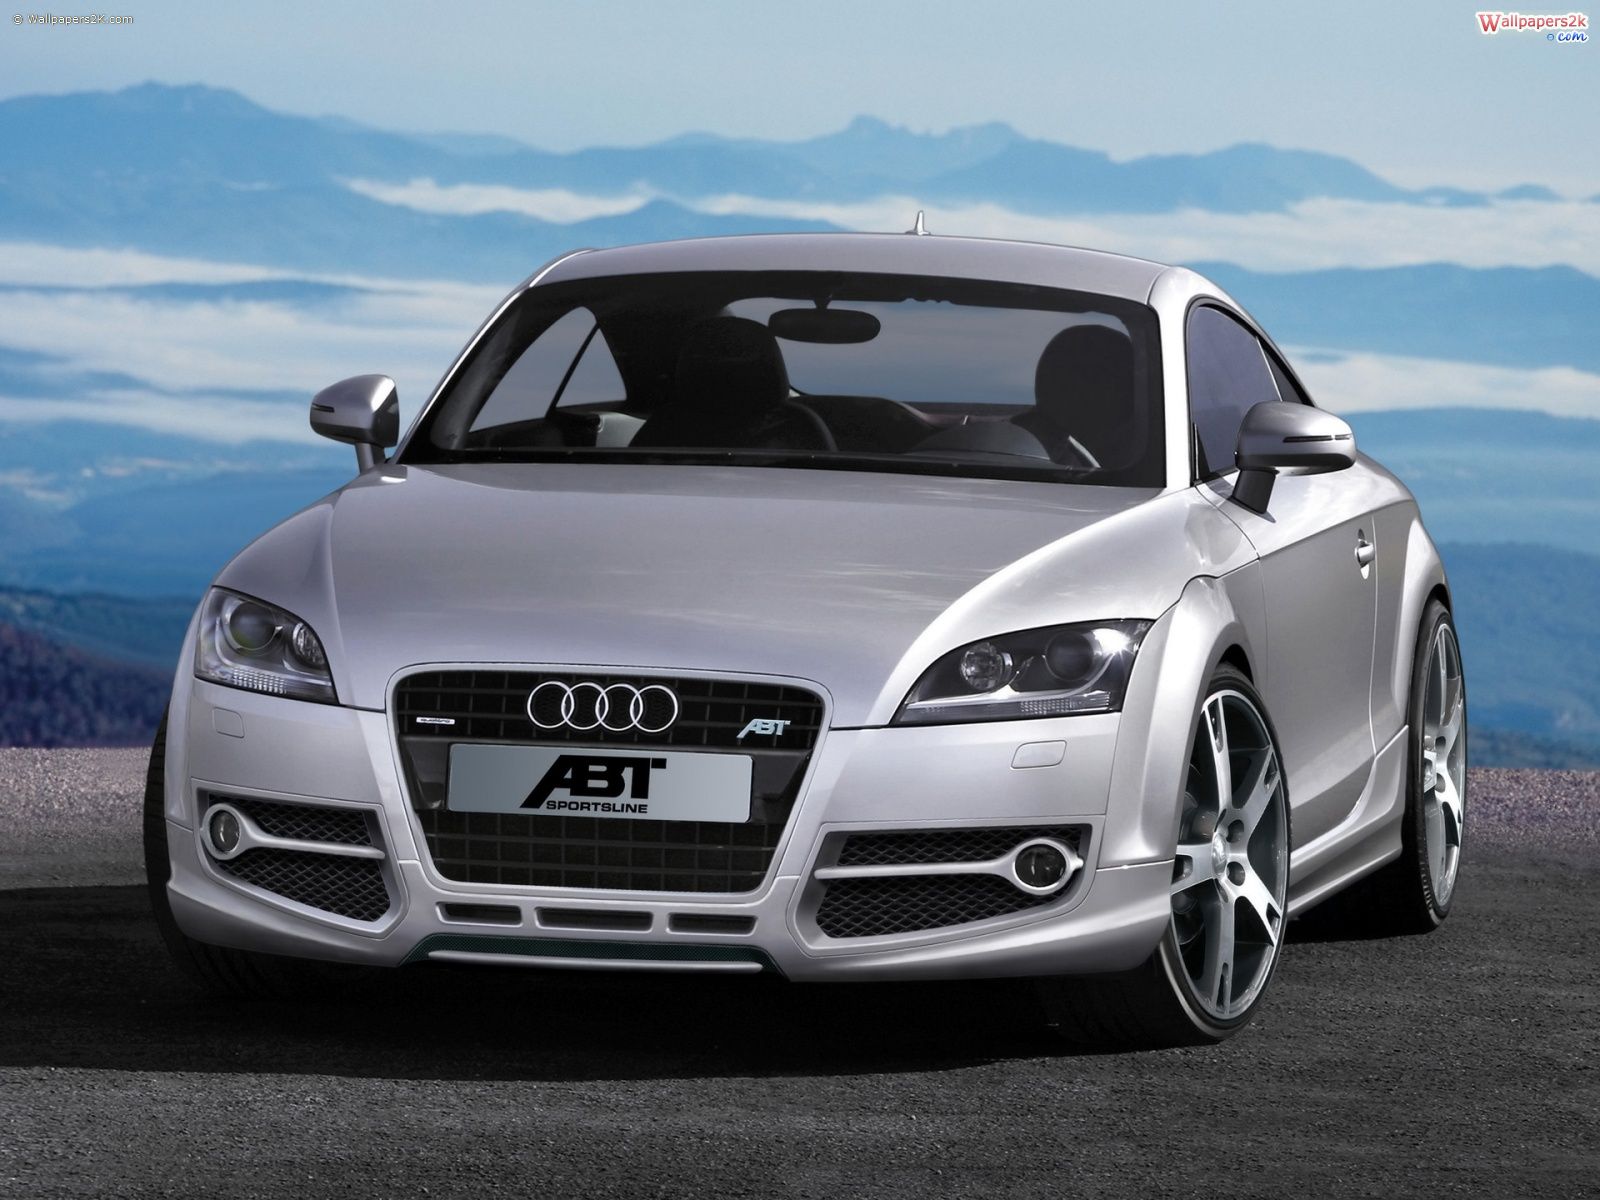 Audi-car-wallpaper-download-58 38300 Desktop Wallpapers | Top ...